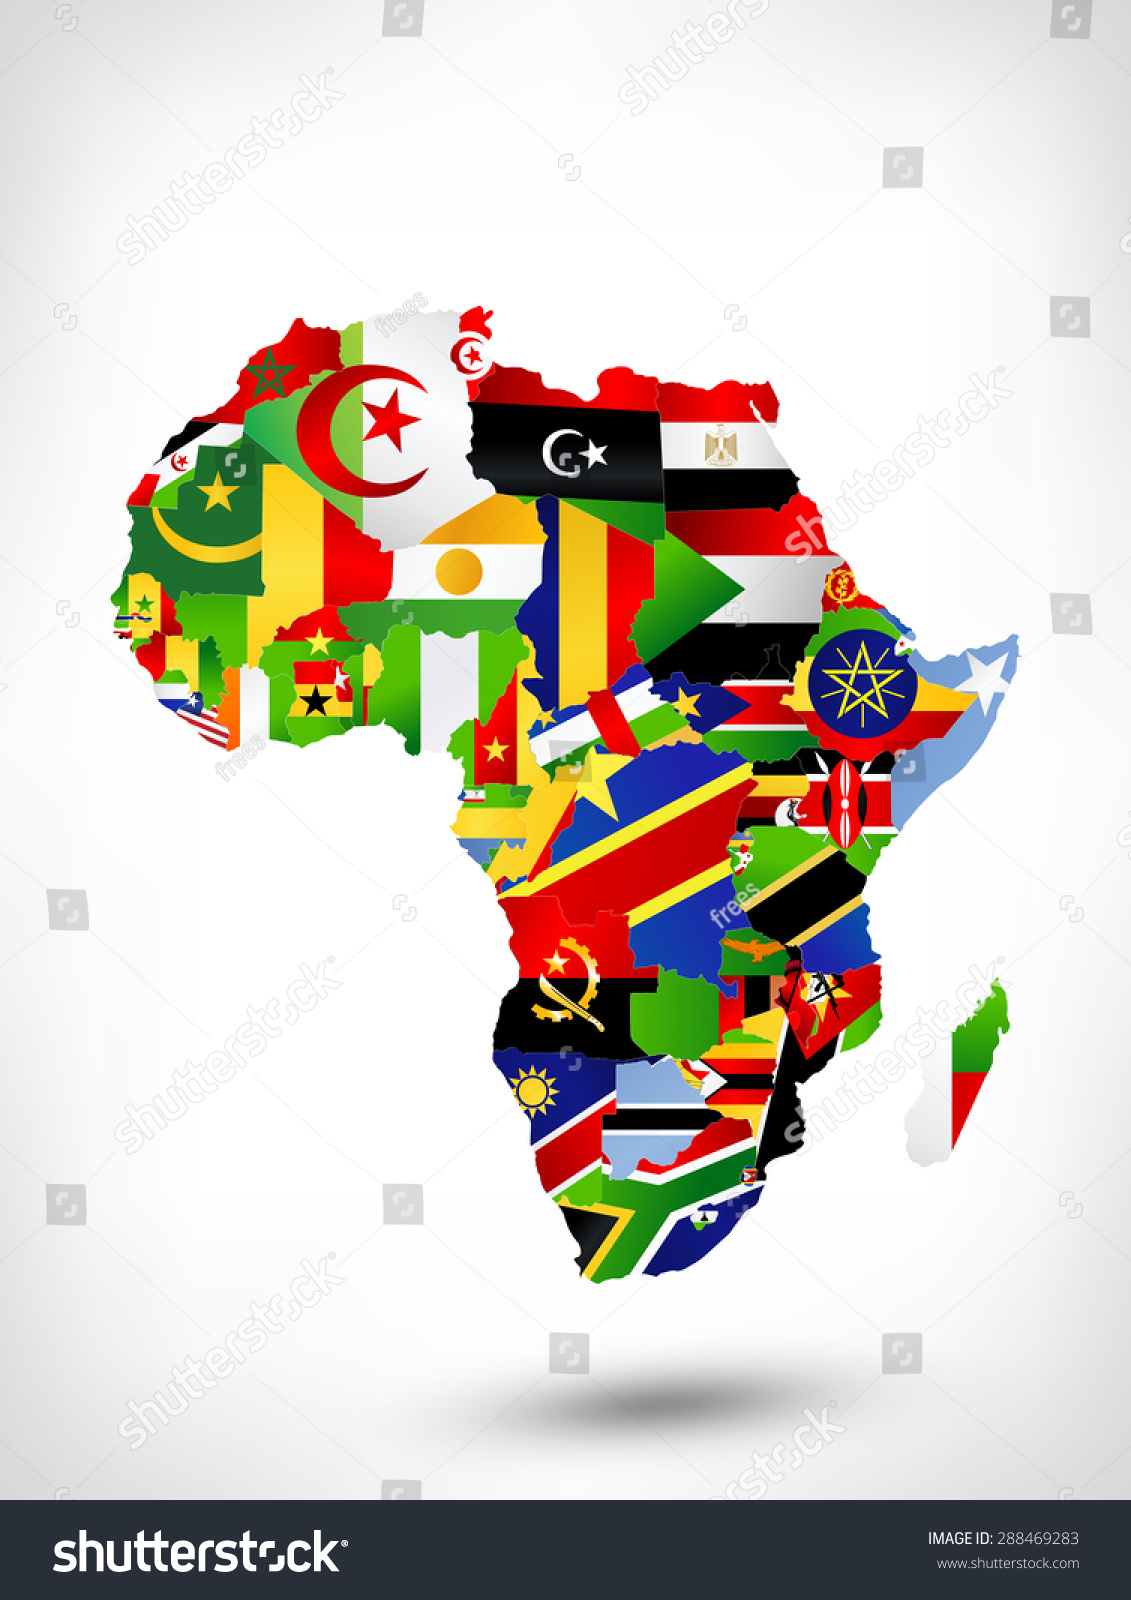 非洲地图与国旗,世界地图上的位置。光栅的版